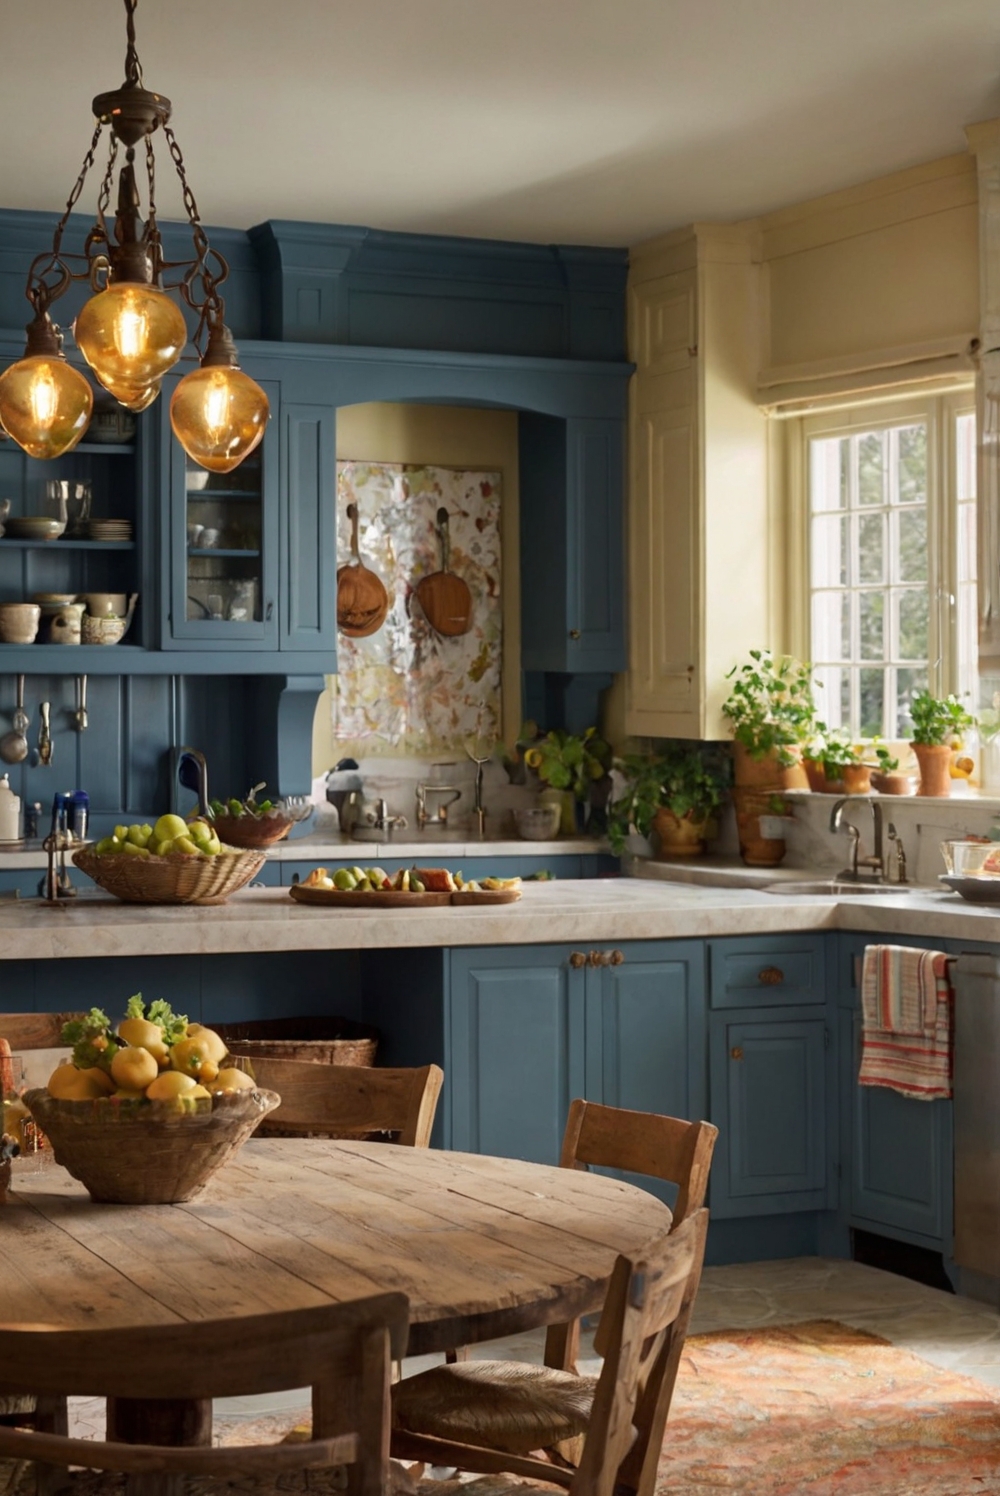 kitchen color schemes, kitchen color ideas, kitchen paint colors, kitchen color trends